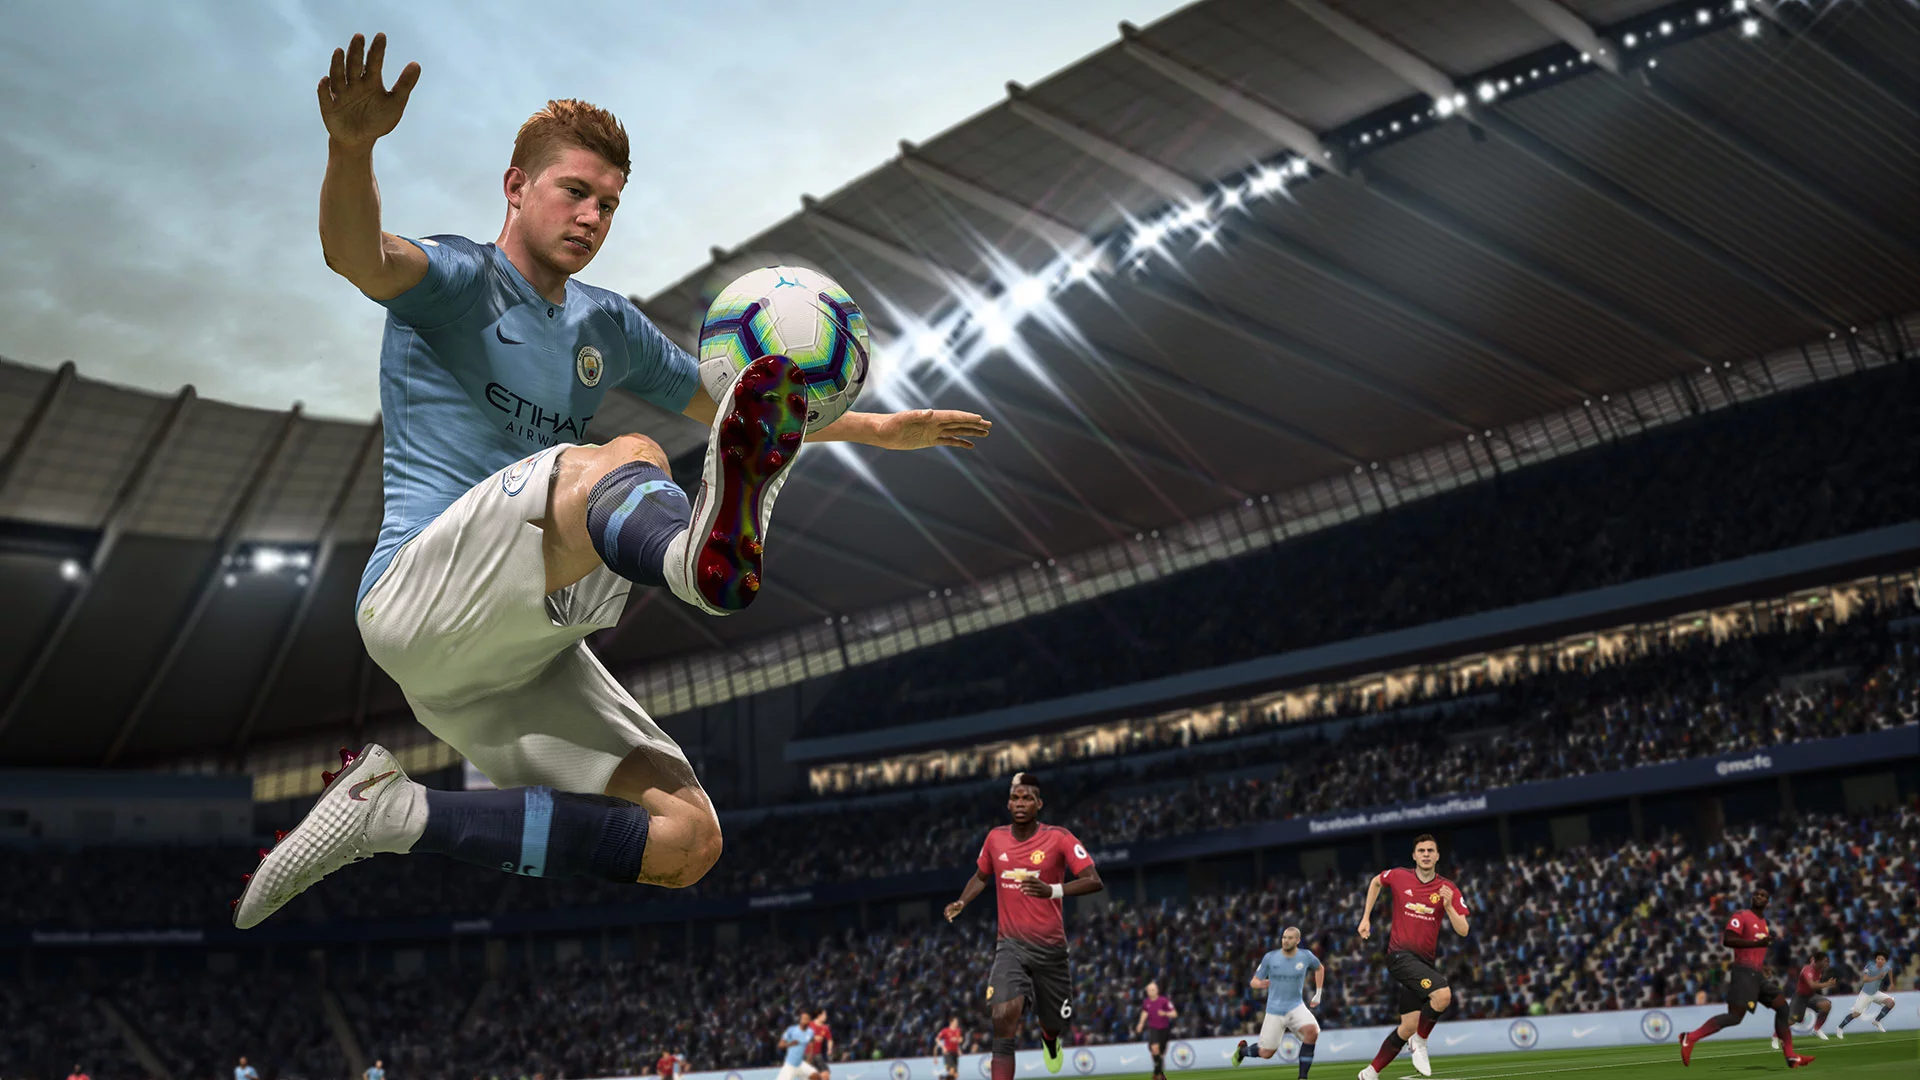 FIFA 19 [Origin/EA app] with a warranty ✅ | offline